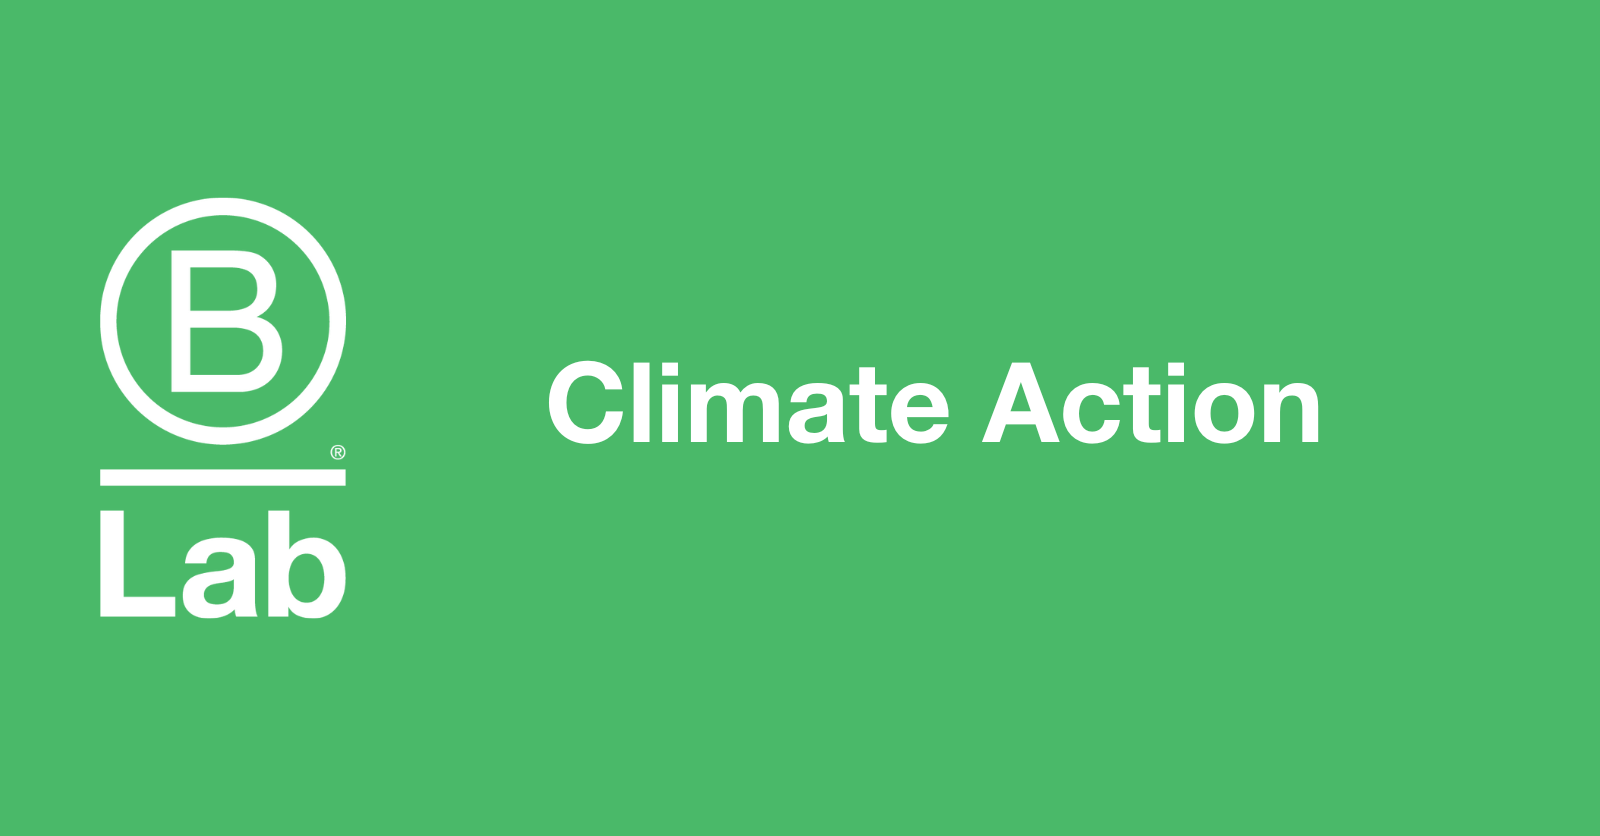 https://images.ctfassets.net/l575jm7617lt/5YMA3q7L4VrrQoXYecX5b2/71ea7d0831bc9d51d620a1b995a0285c/Climate_Action_BLG_site_header.png?w=1600&h=836&q=50&fm=png